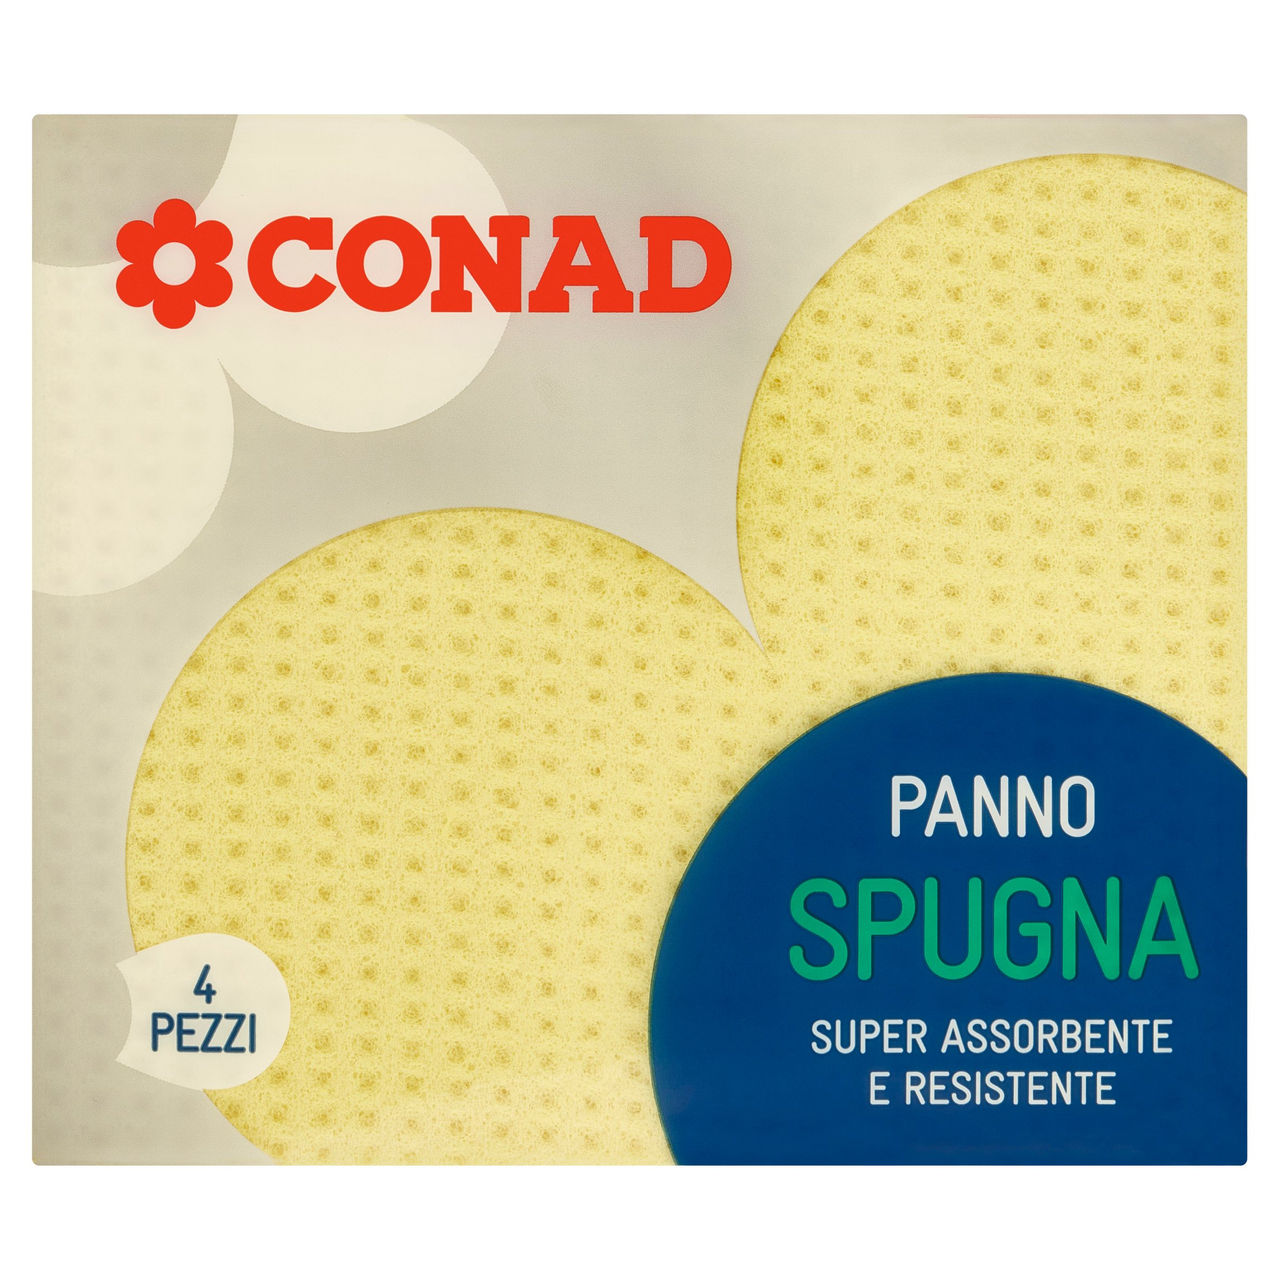 Panno Spugna 4 Pezzi Conad in vendita online